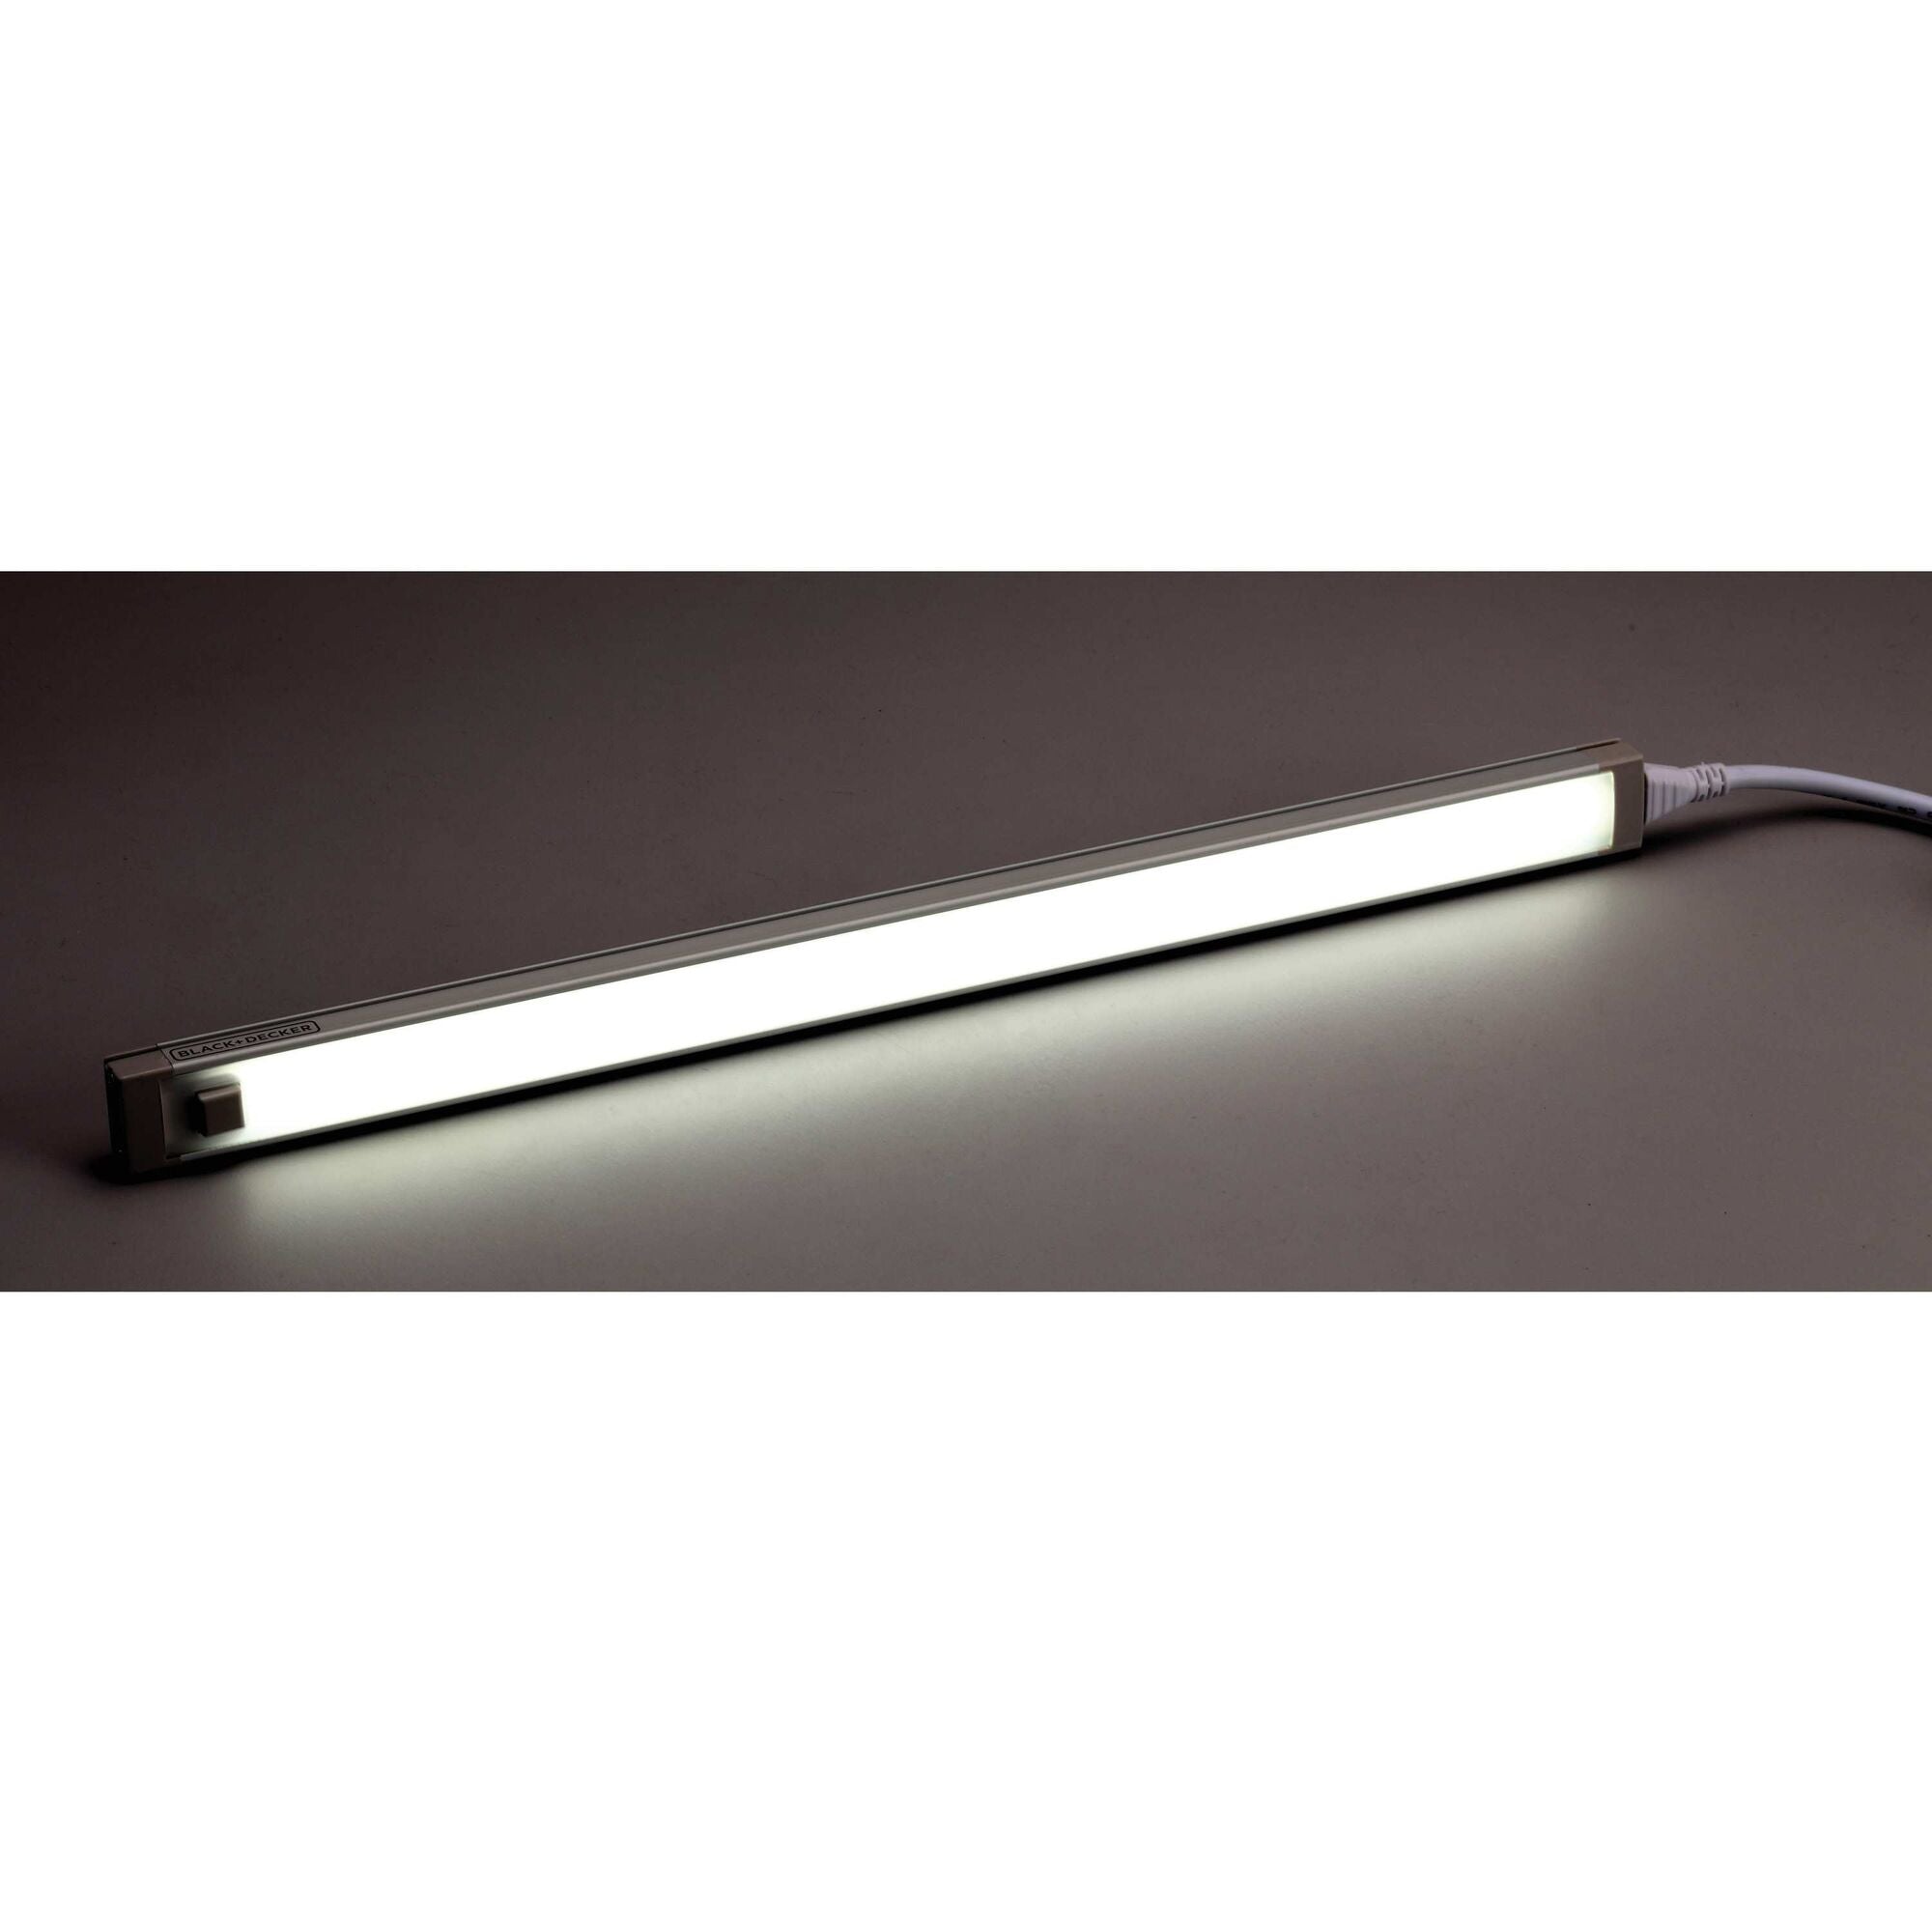 Black+decker LED Under Cabinet Lighting Kit, 9, Cool White - 3